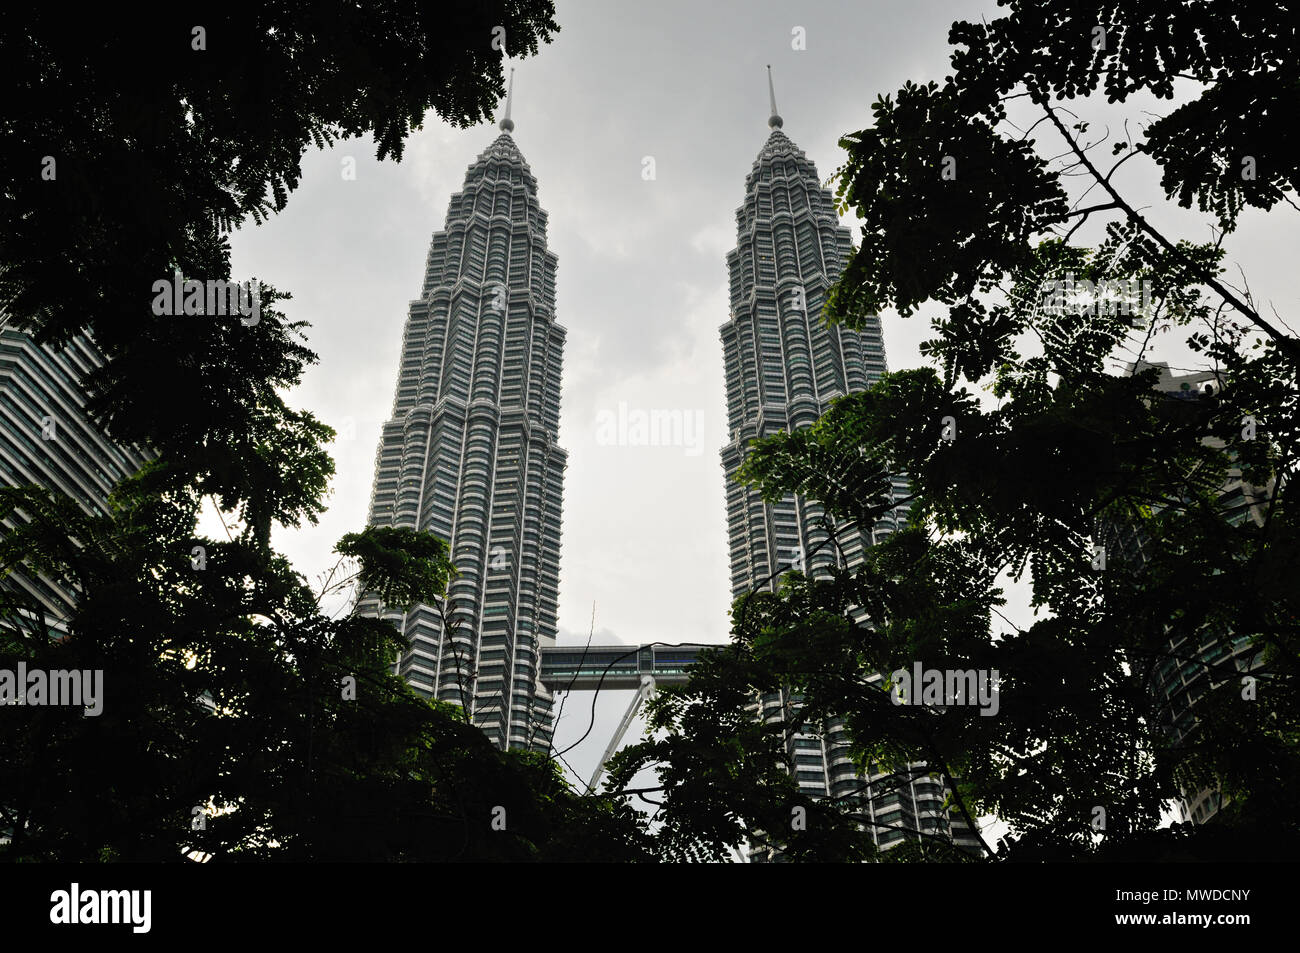 The Petronas Twin Towers in Kuala Lumpur, Malaysia Stock Photo